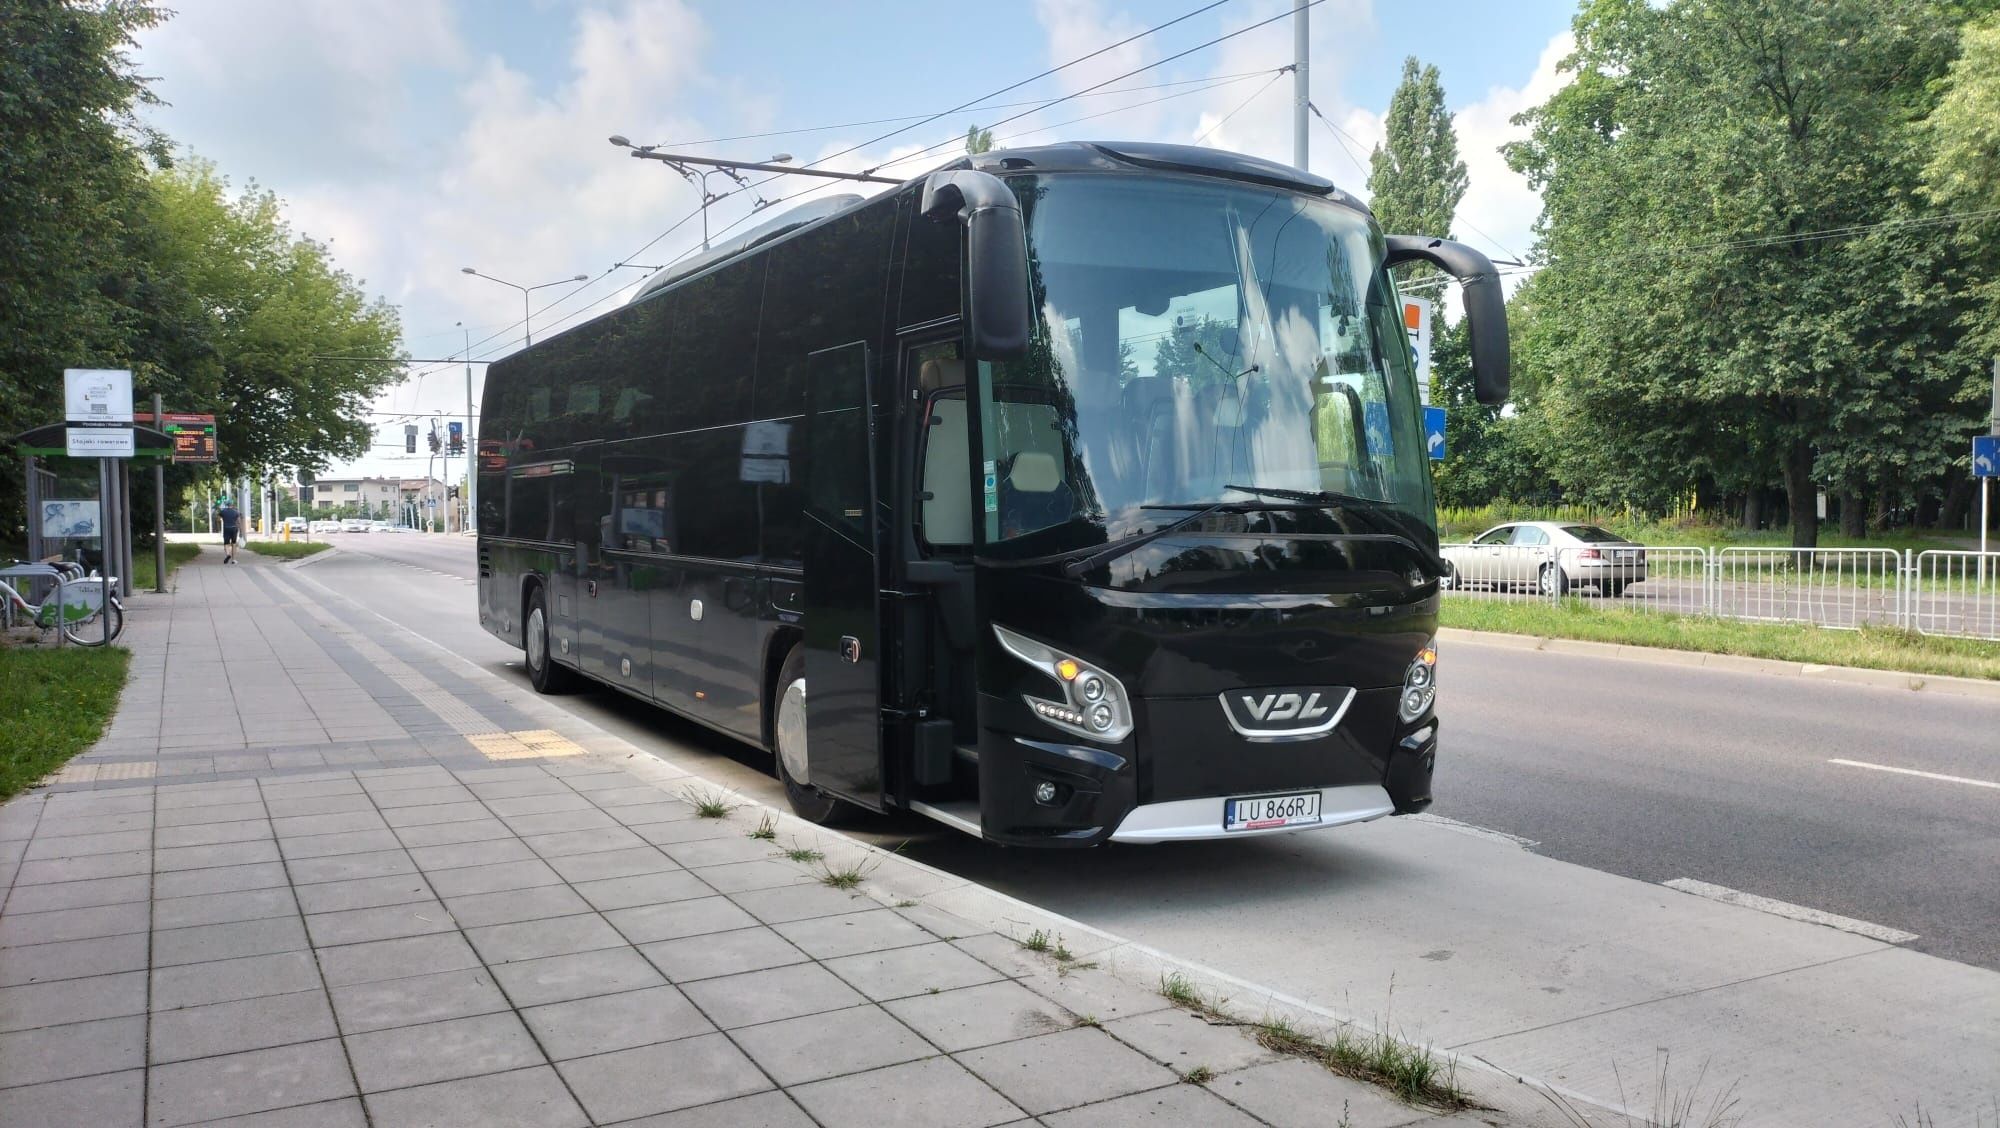 Wynajem busów, autobusów w Lublinie , przewozy pracownicze, — busy